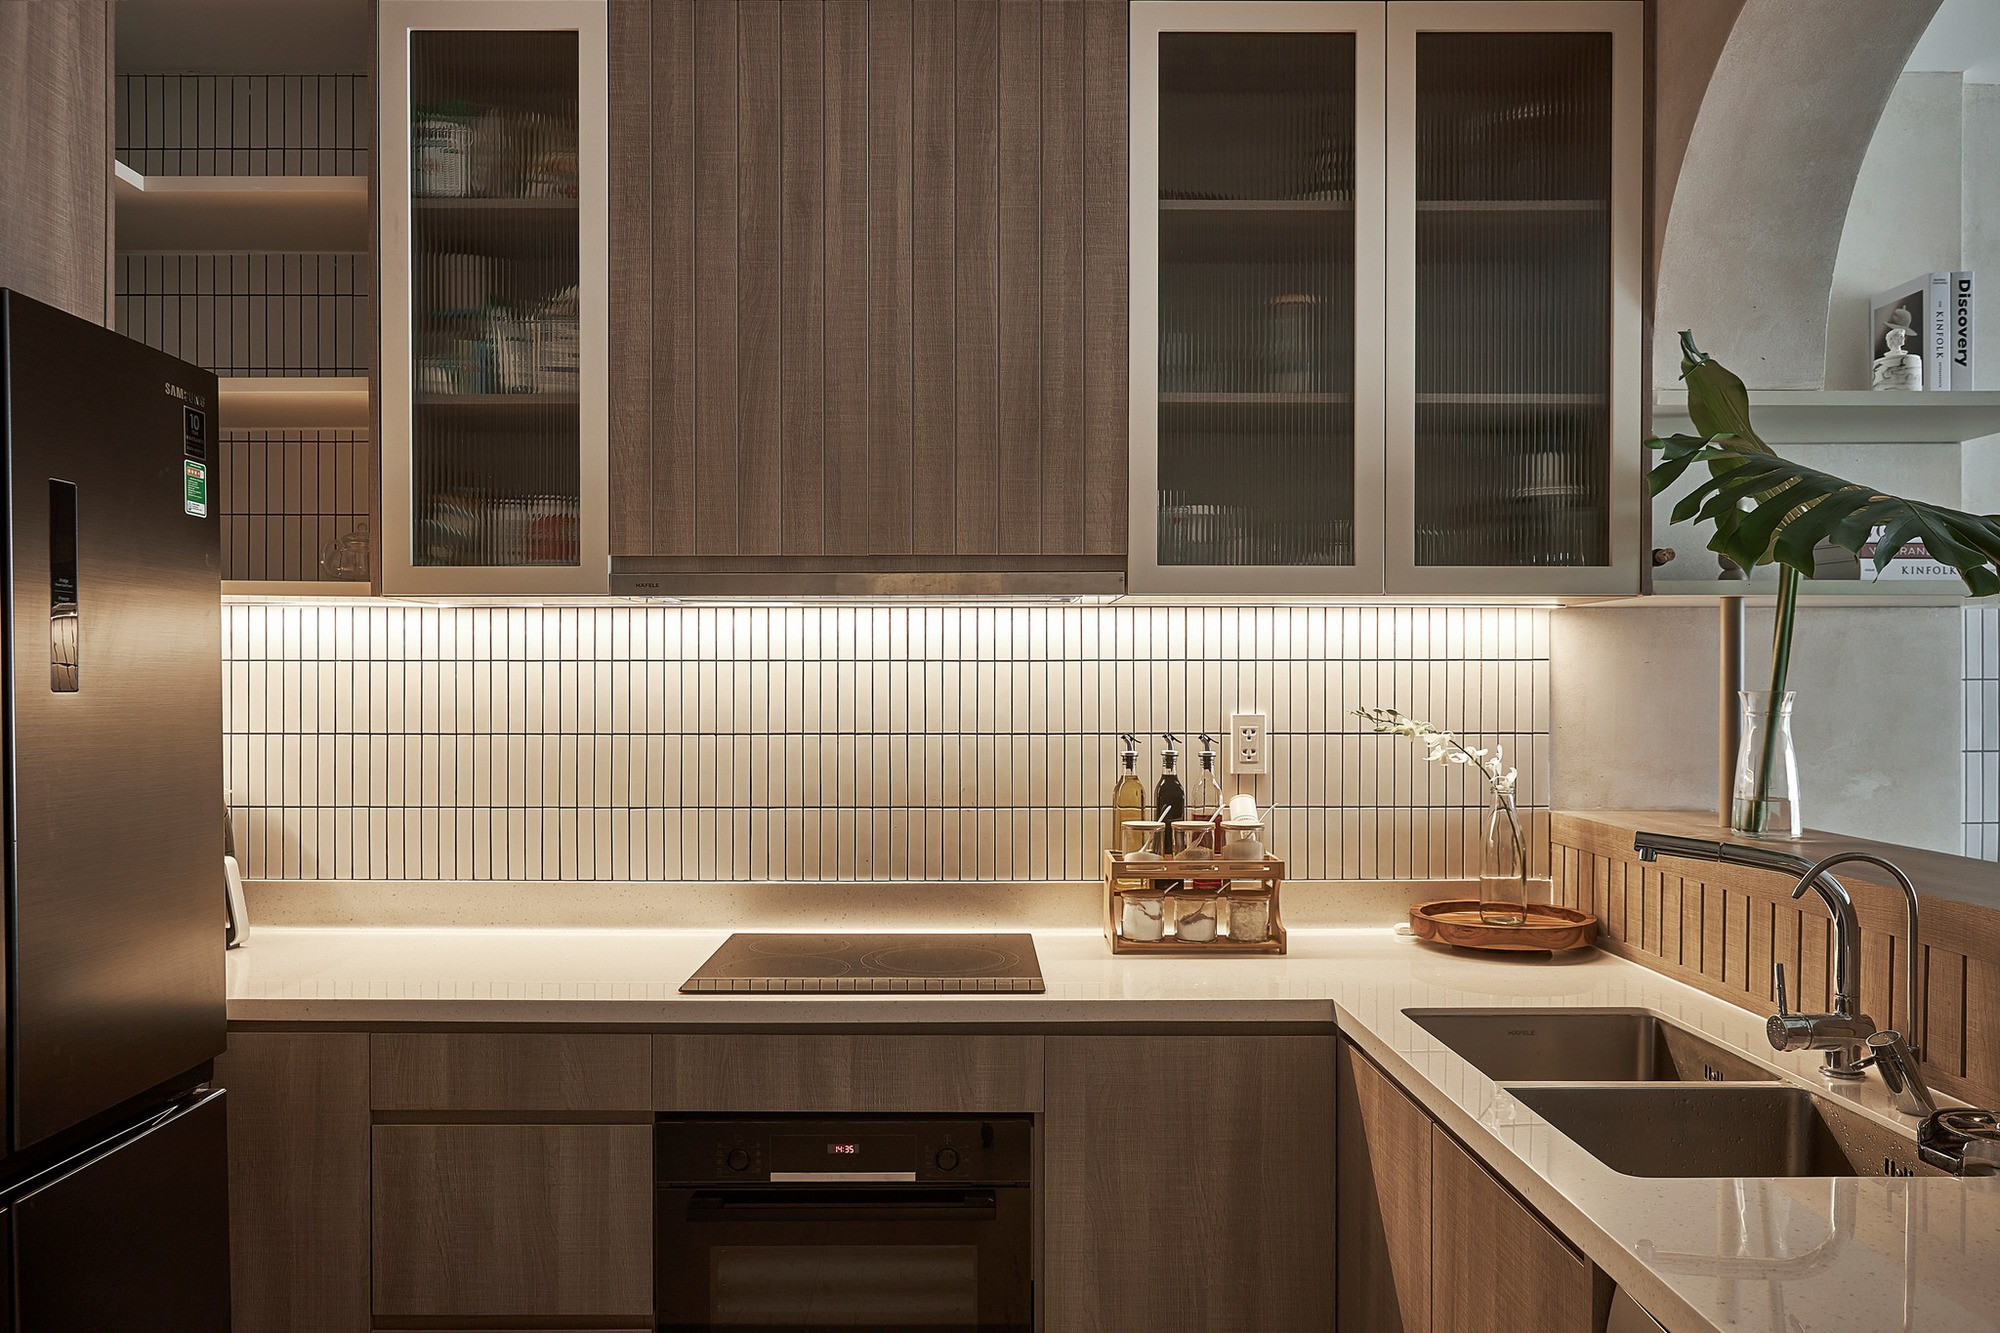 Phòng bếp được sắp xếp gọn gàng, ngăn nắp nhưng vẫn mang nét giản dị đặc trưng của phong cách Wabi-sabi | Nguồn ảnh: Internet.